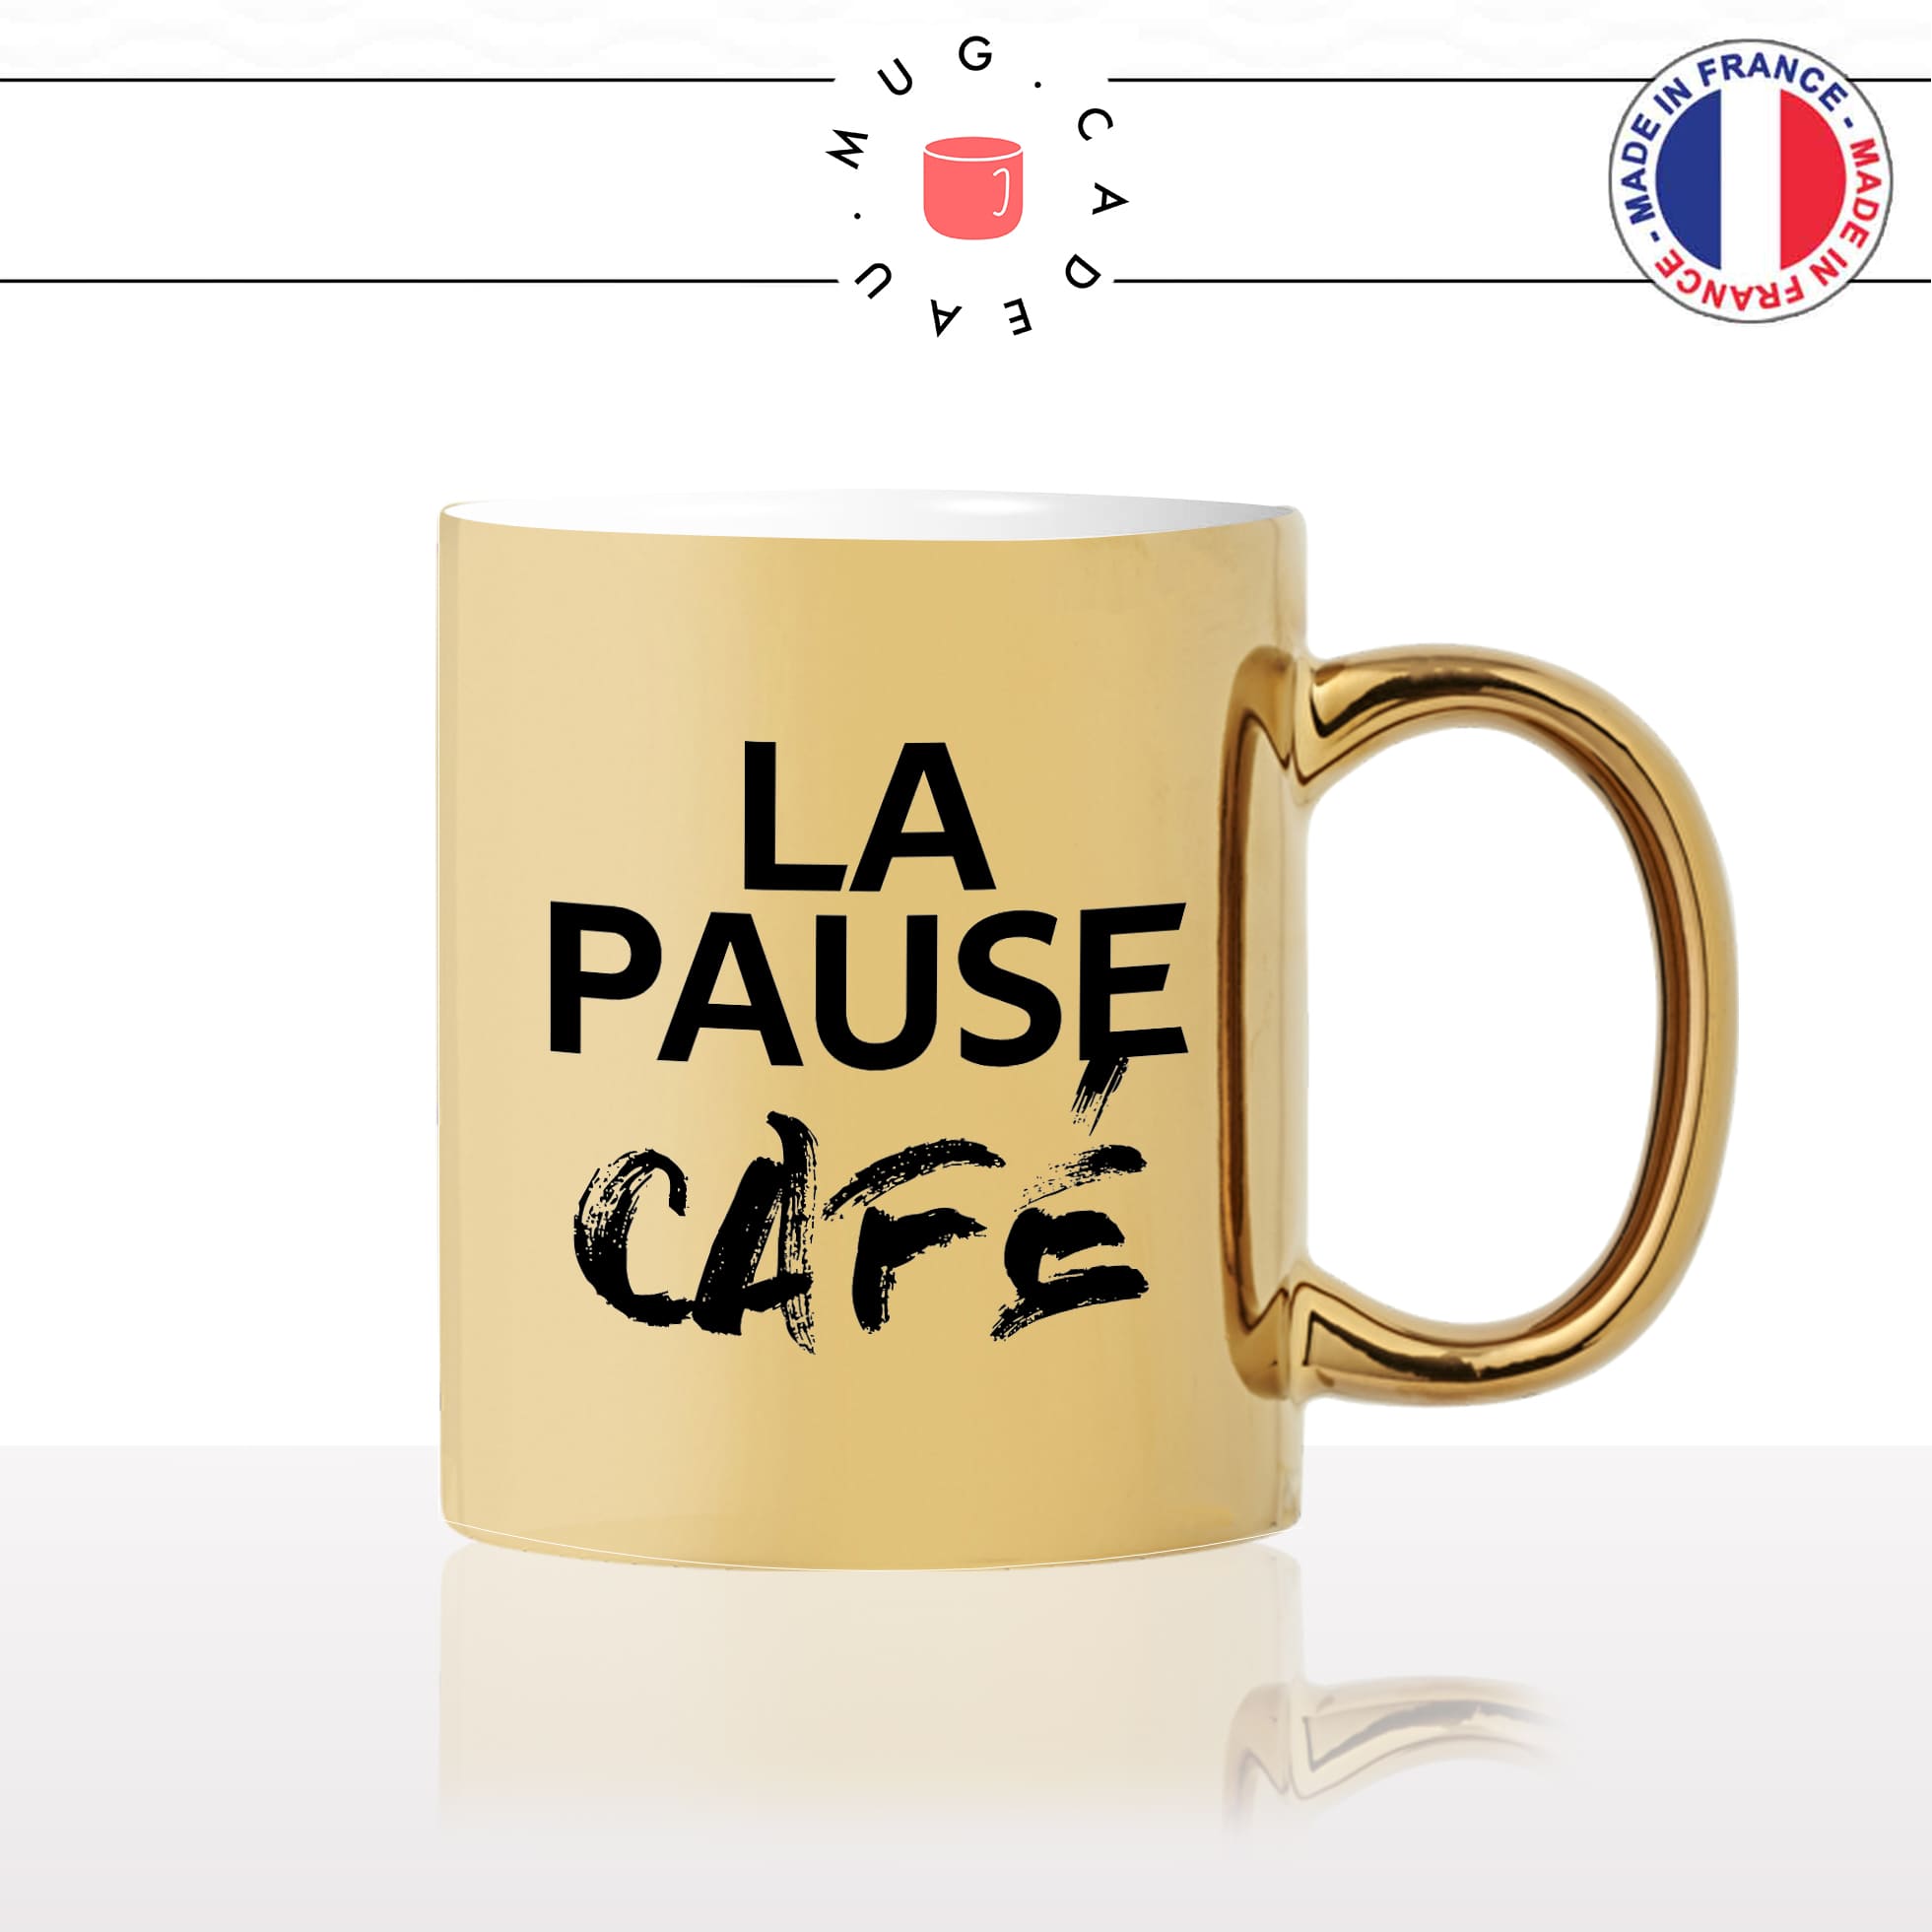 mug-tasse-or-doré-gold-la-pause-café-thé-collegue-travail-boulot-homme-femme-accro-humour-fun-idée-cadeau-originale-cool2